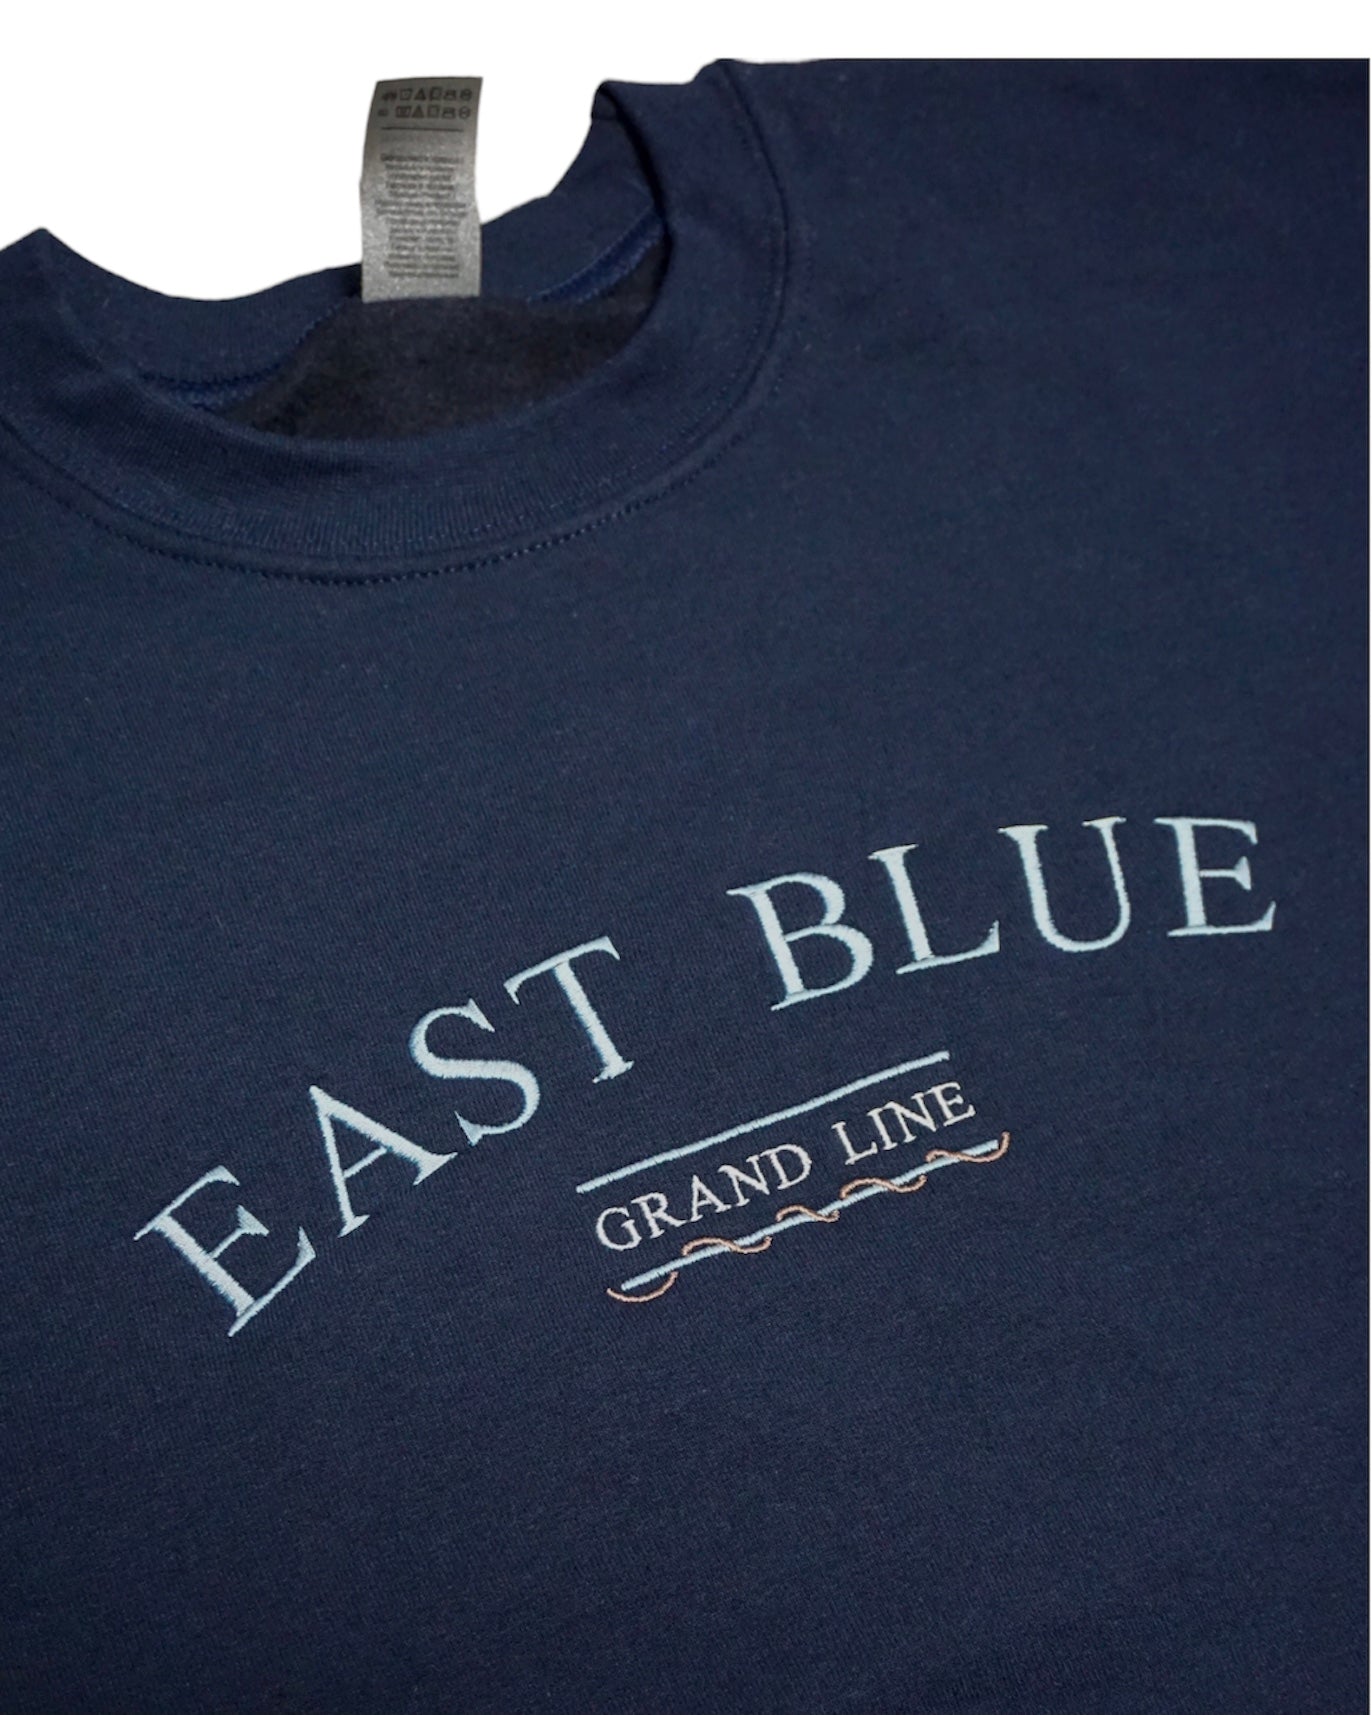 [NON PREMIUM] East Blue Crewneck Sweater